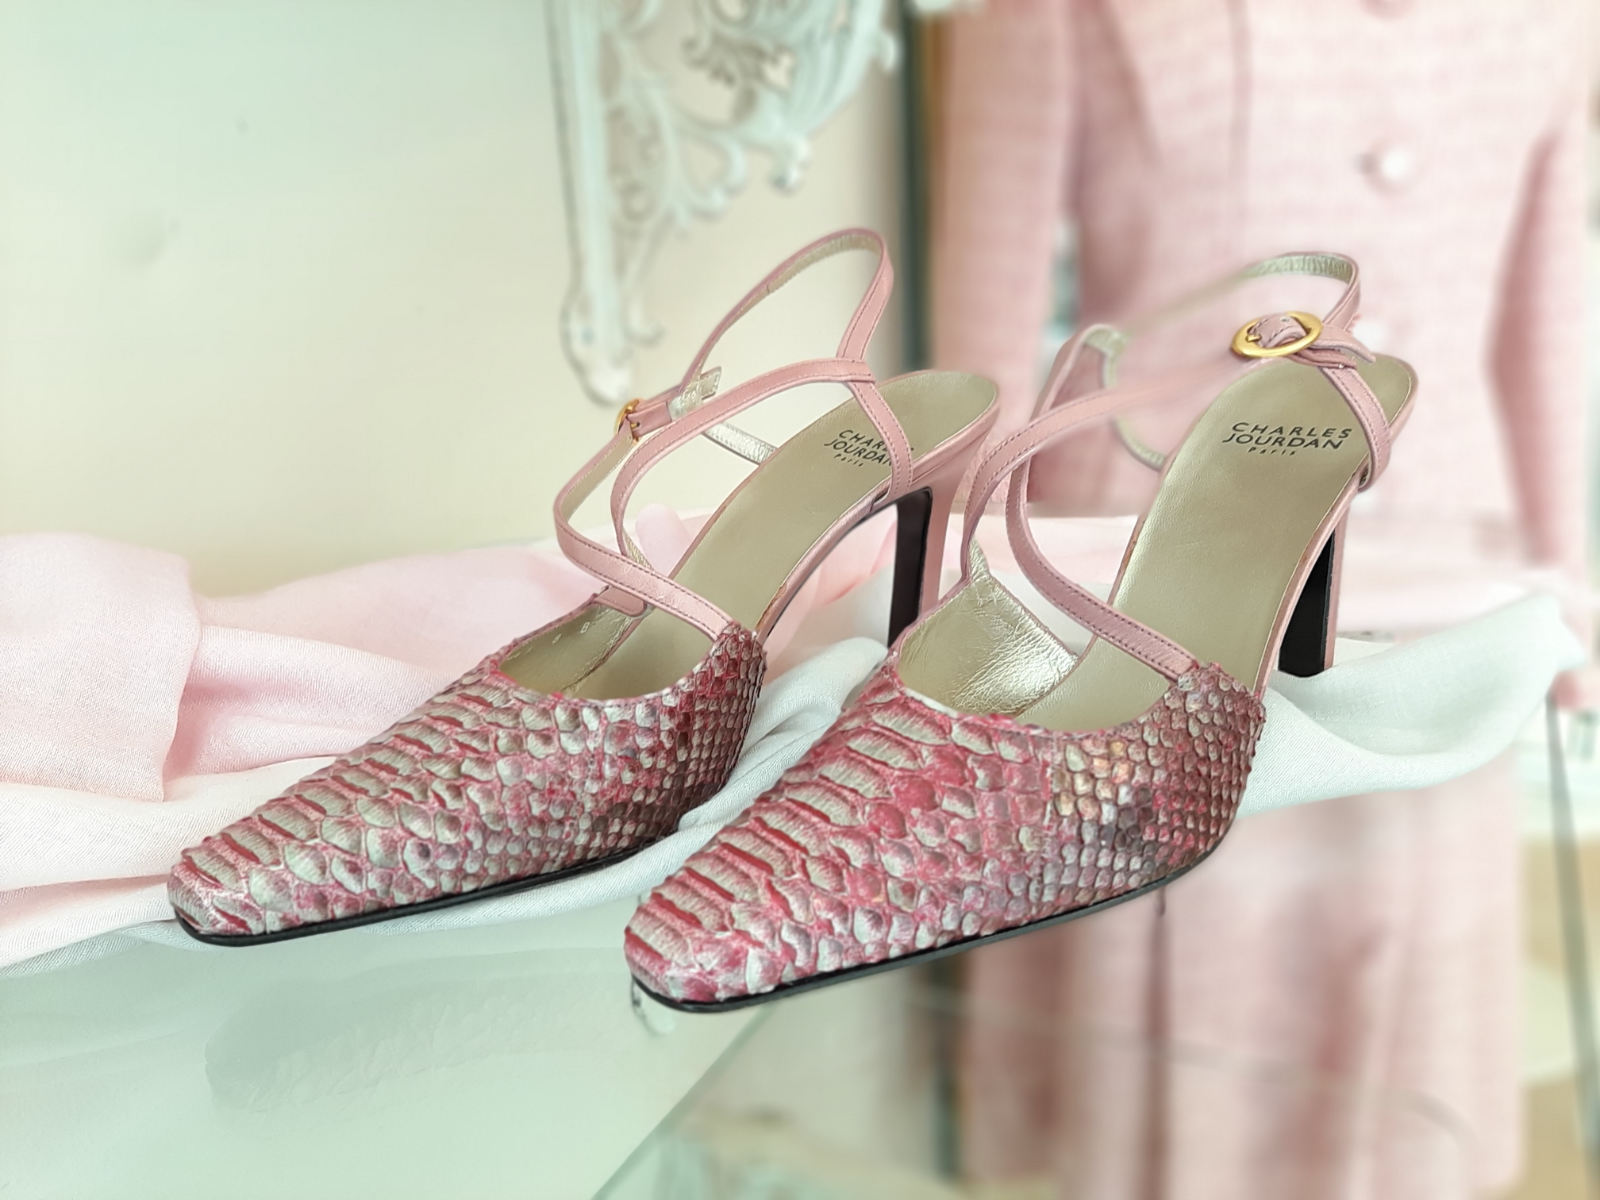 Schuhe von Charles Jourdan, in rosa und weiß, Größe 39, von vorne.